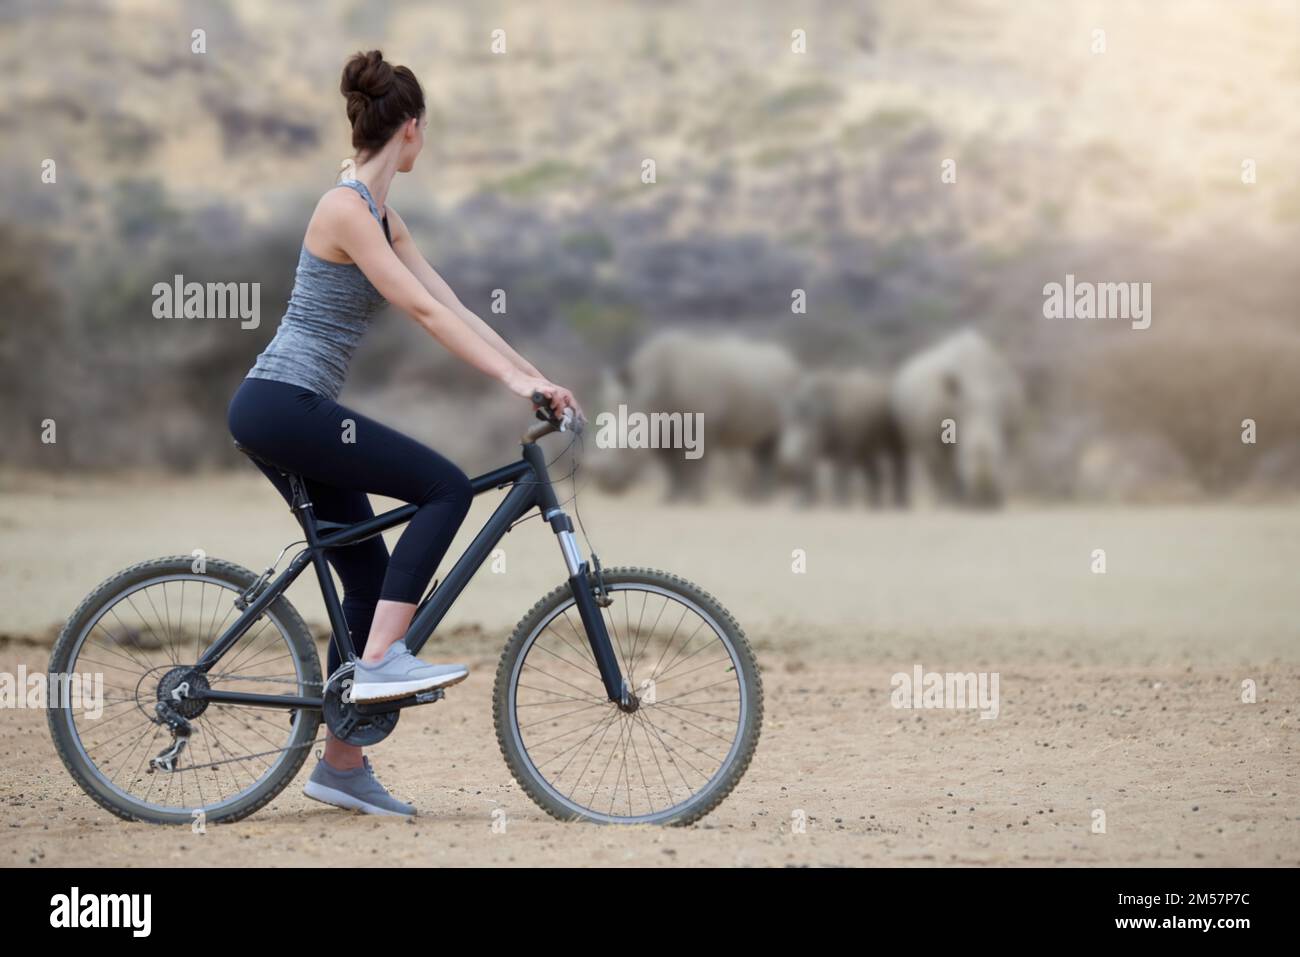 Afrika auf umweltbewusste Weise erkunden. Eine junge Frau auf einem Fahrrad, die eine Gruppe Nashörner im Veld ansieht. Stockfoto